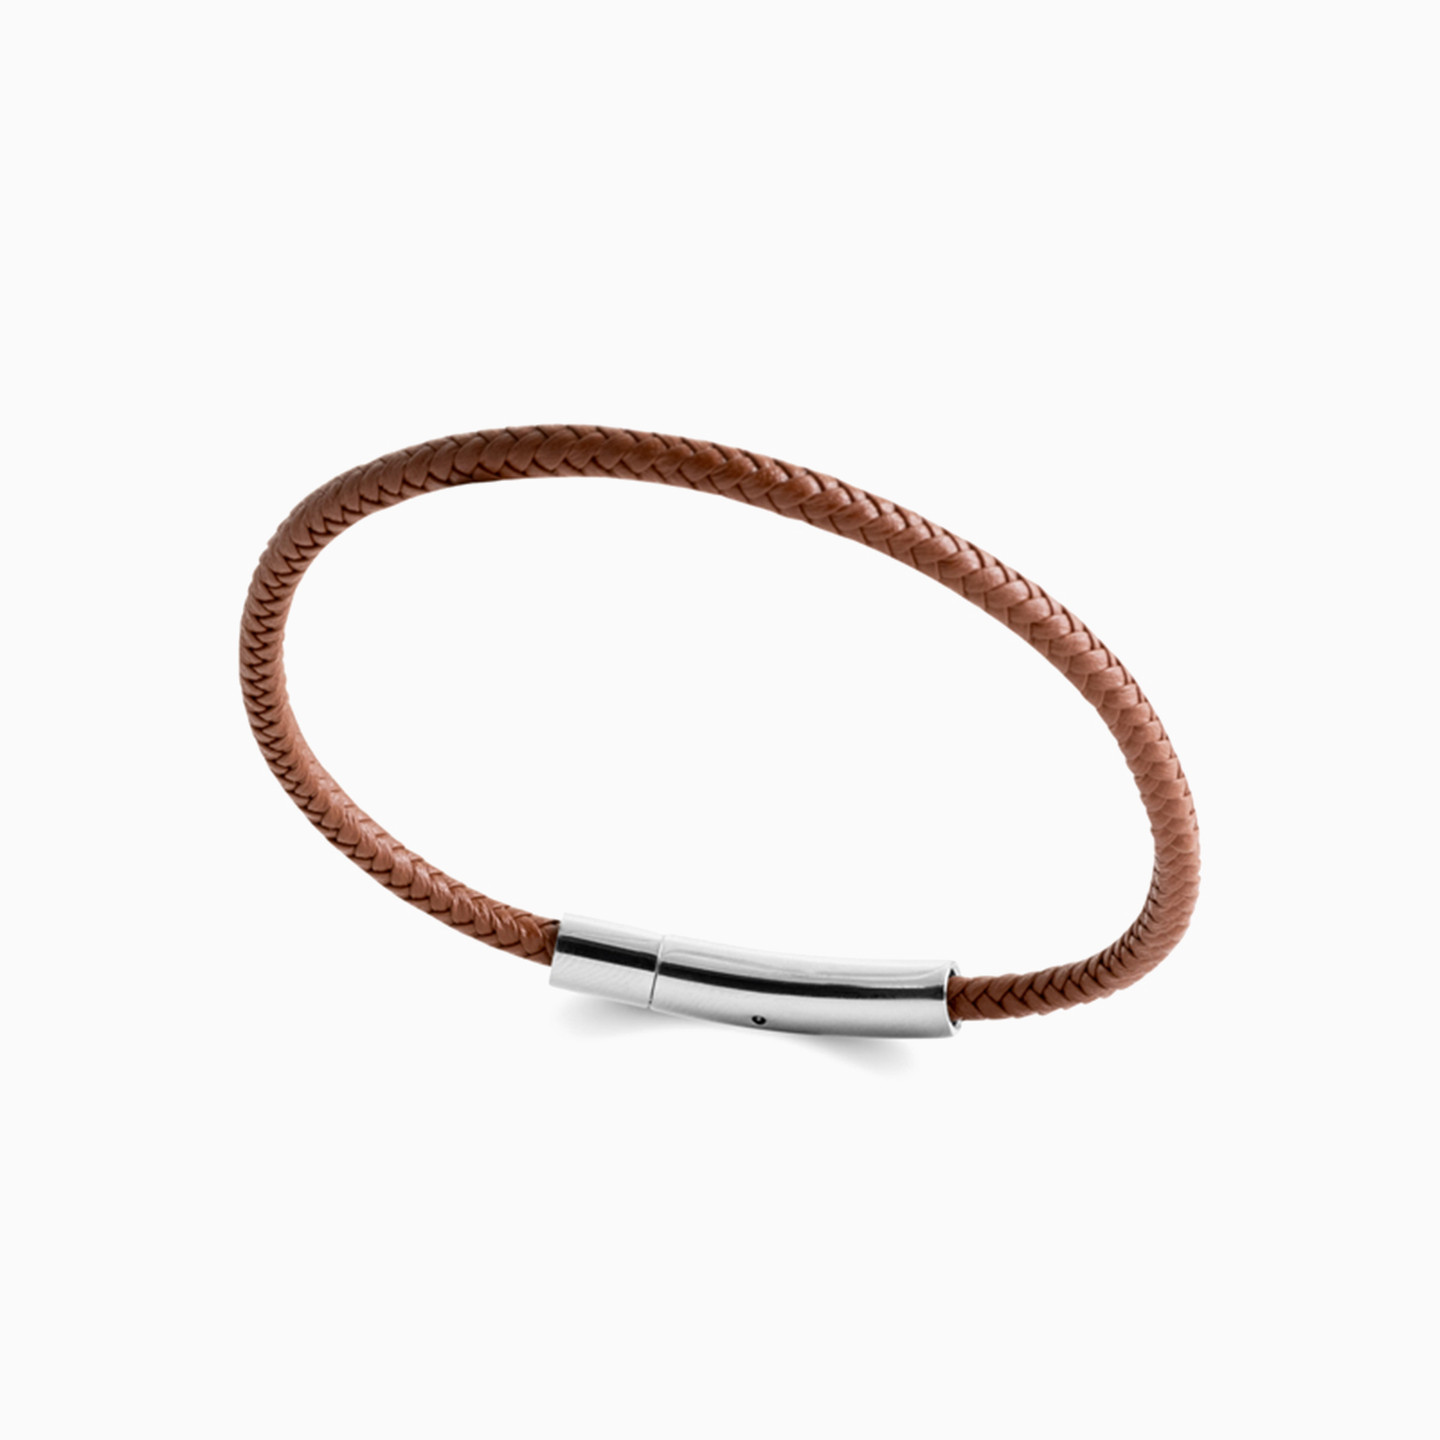 Steel Fabric Cuff Bracelet for Men